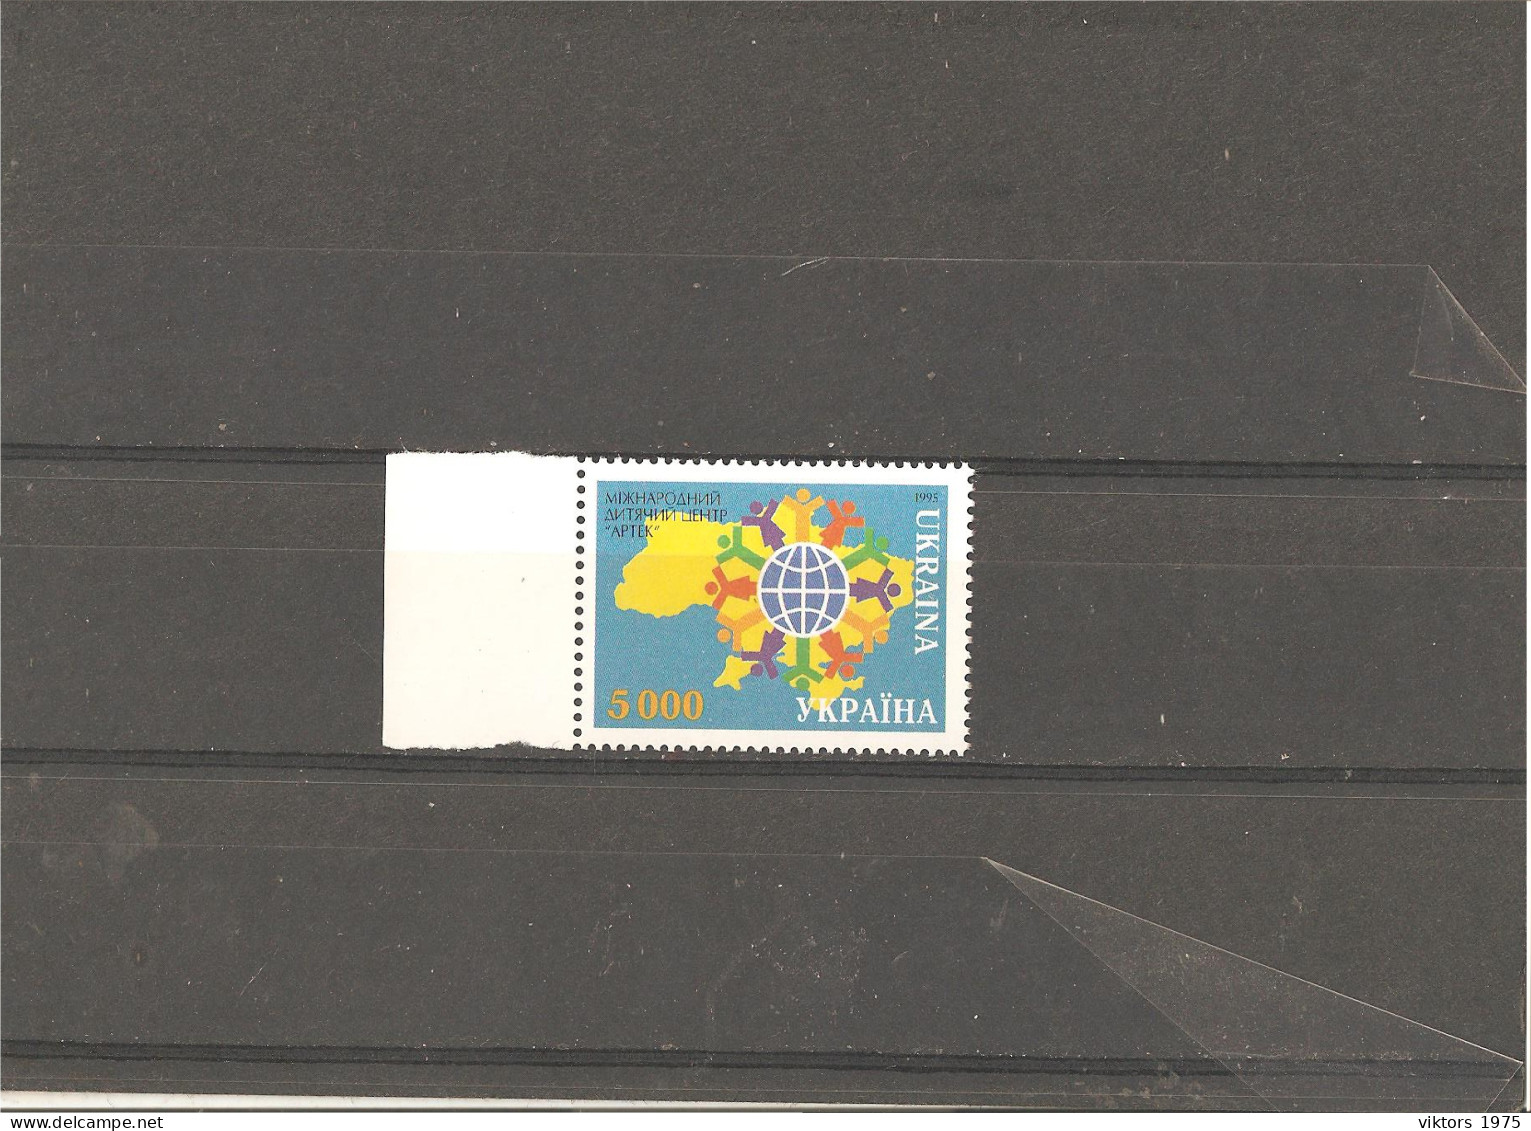 MNH Stamp Nr.141 In MICHEL Catalog - Ukraine